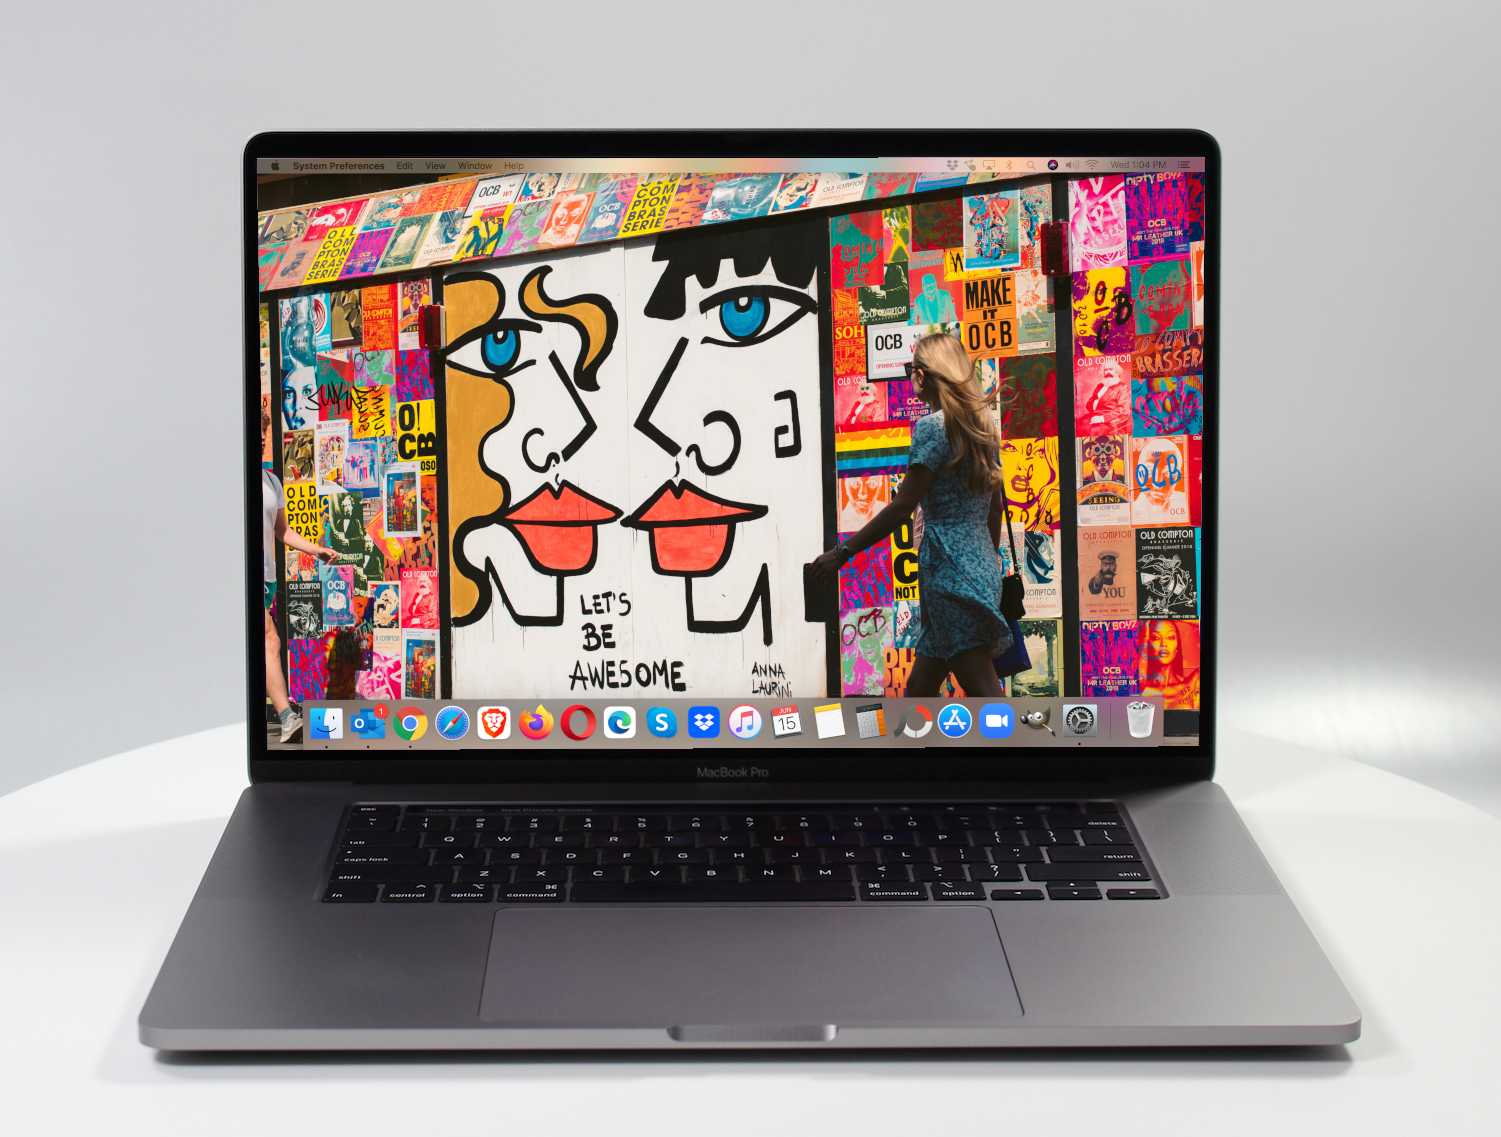 MacBook Pro 16 inch i9 2.4 GHz i9 32GB 1TB SSD Space Grey